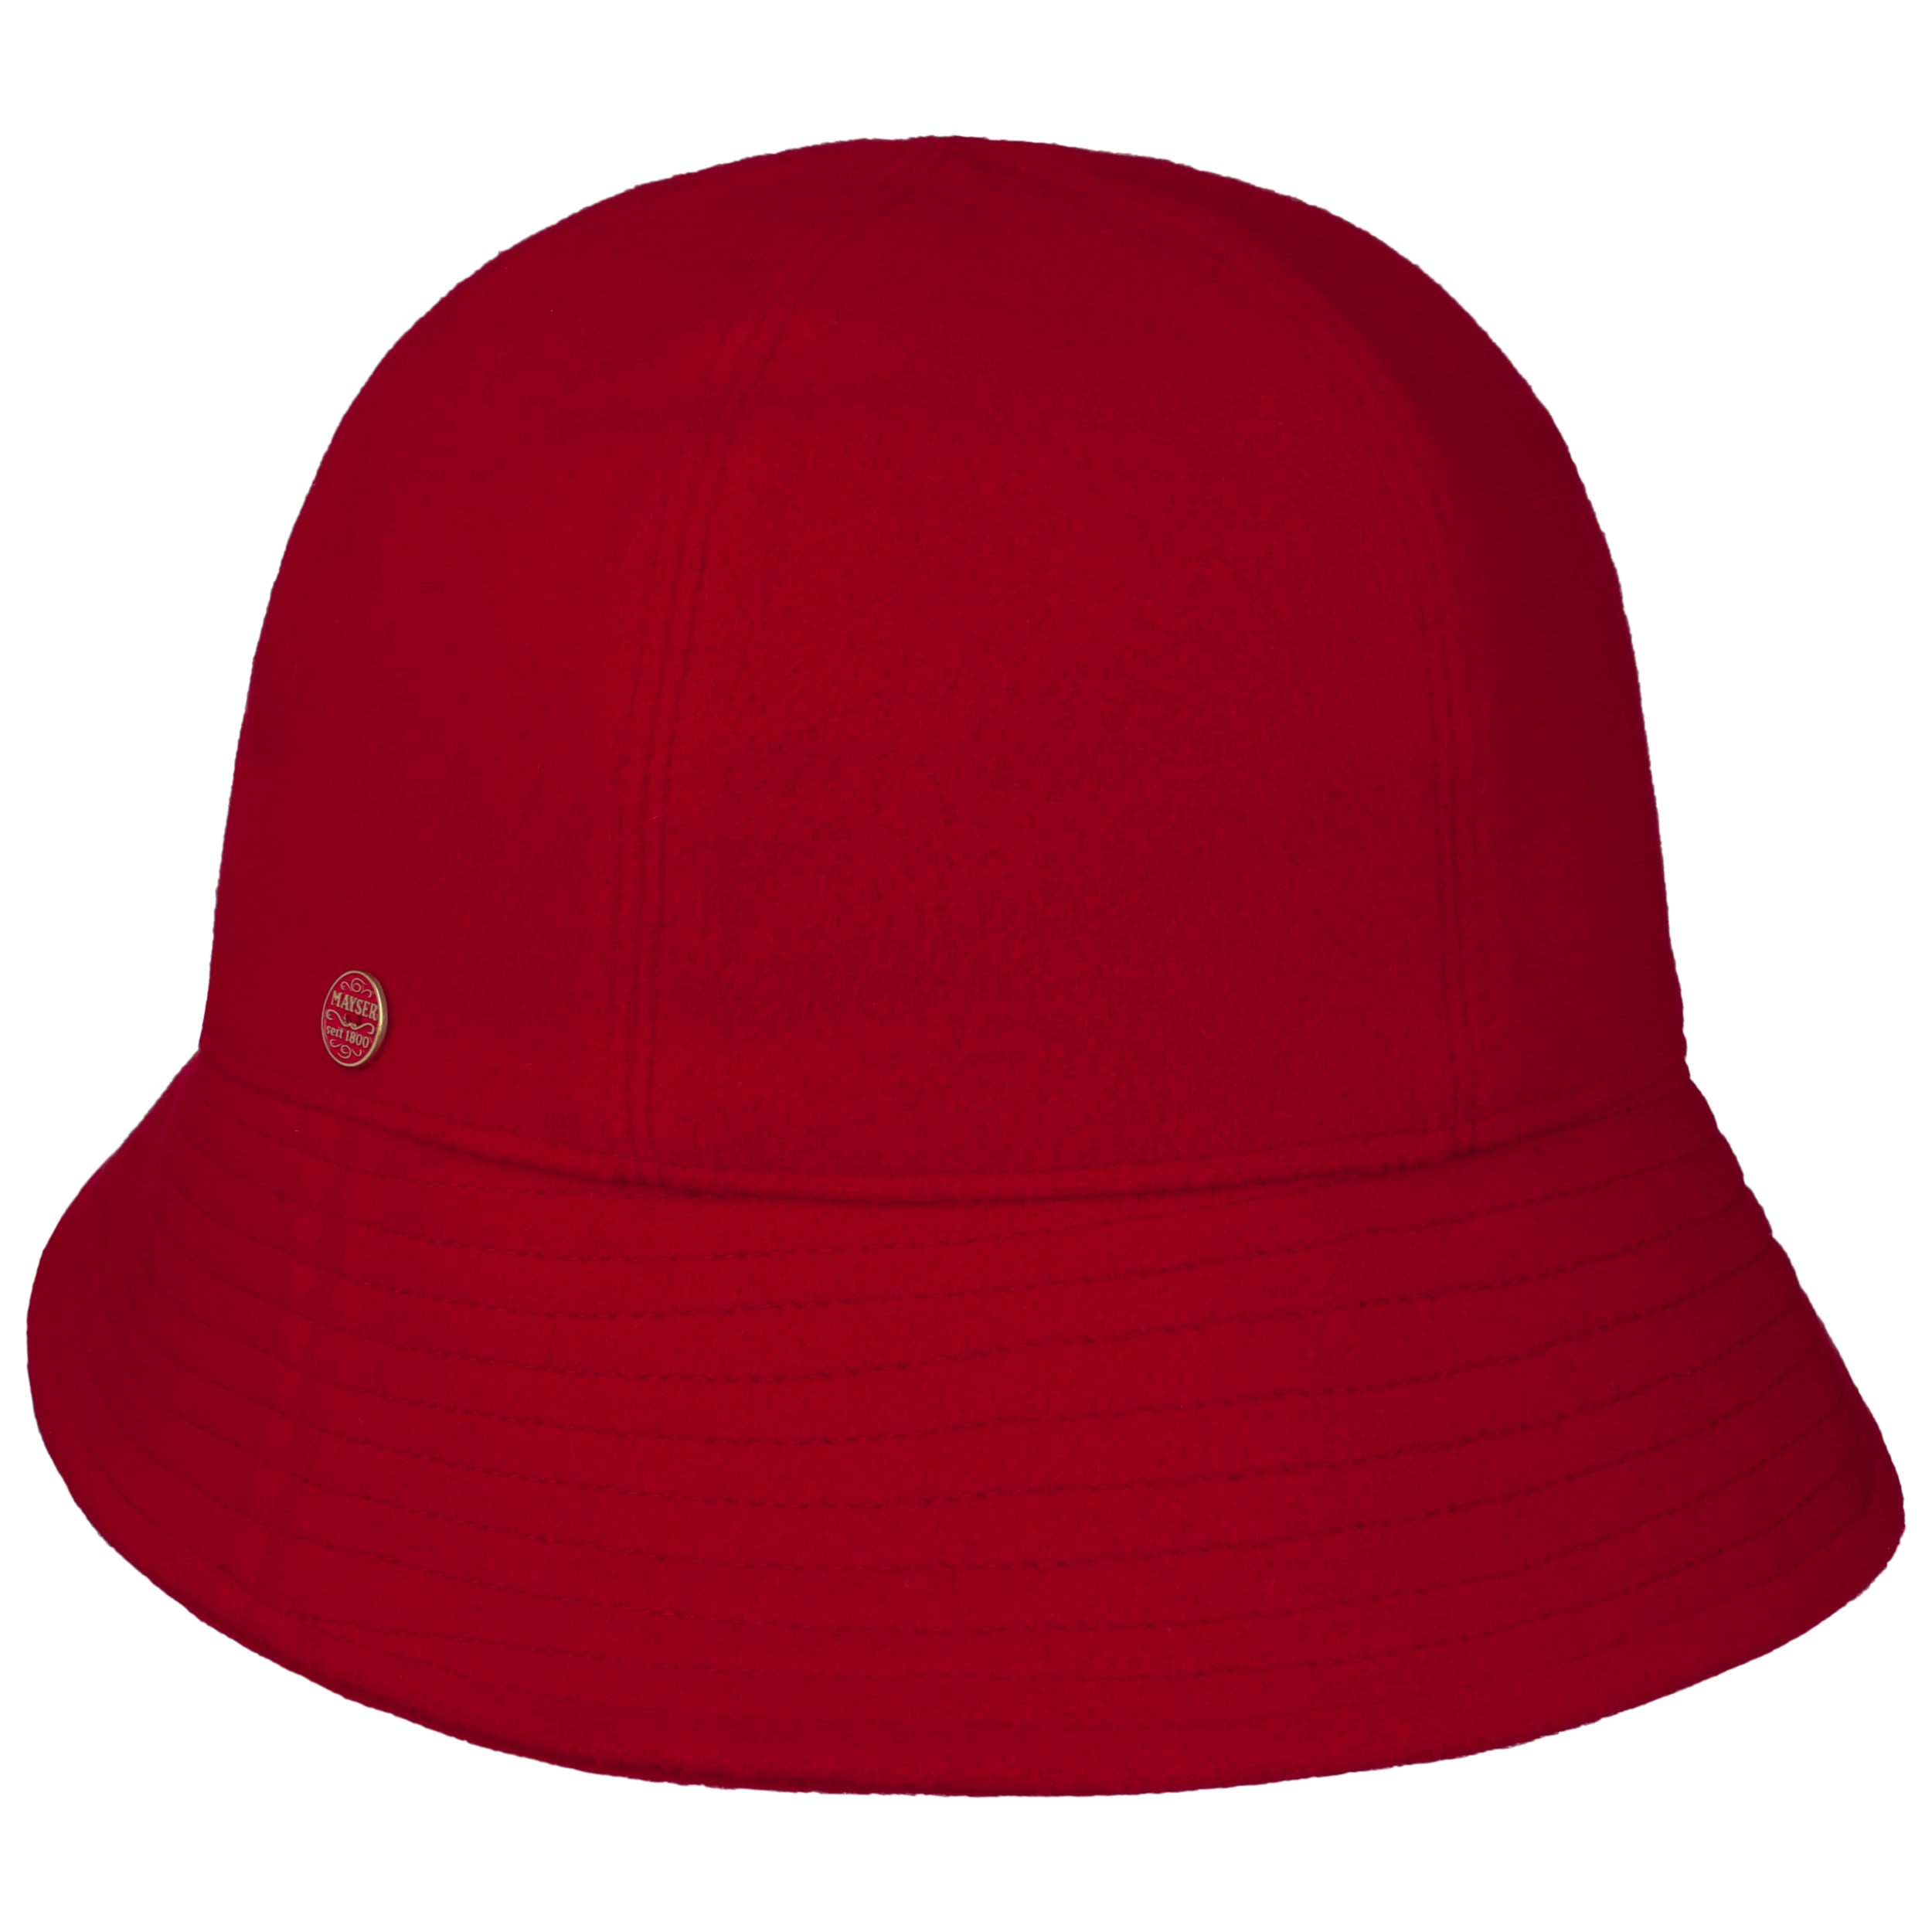 Gerda Pascal Asym Brim Wool Hat by Mayser - Red - Damen - Size: One Size